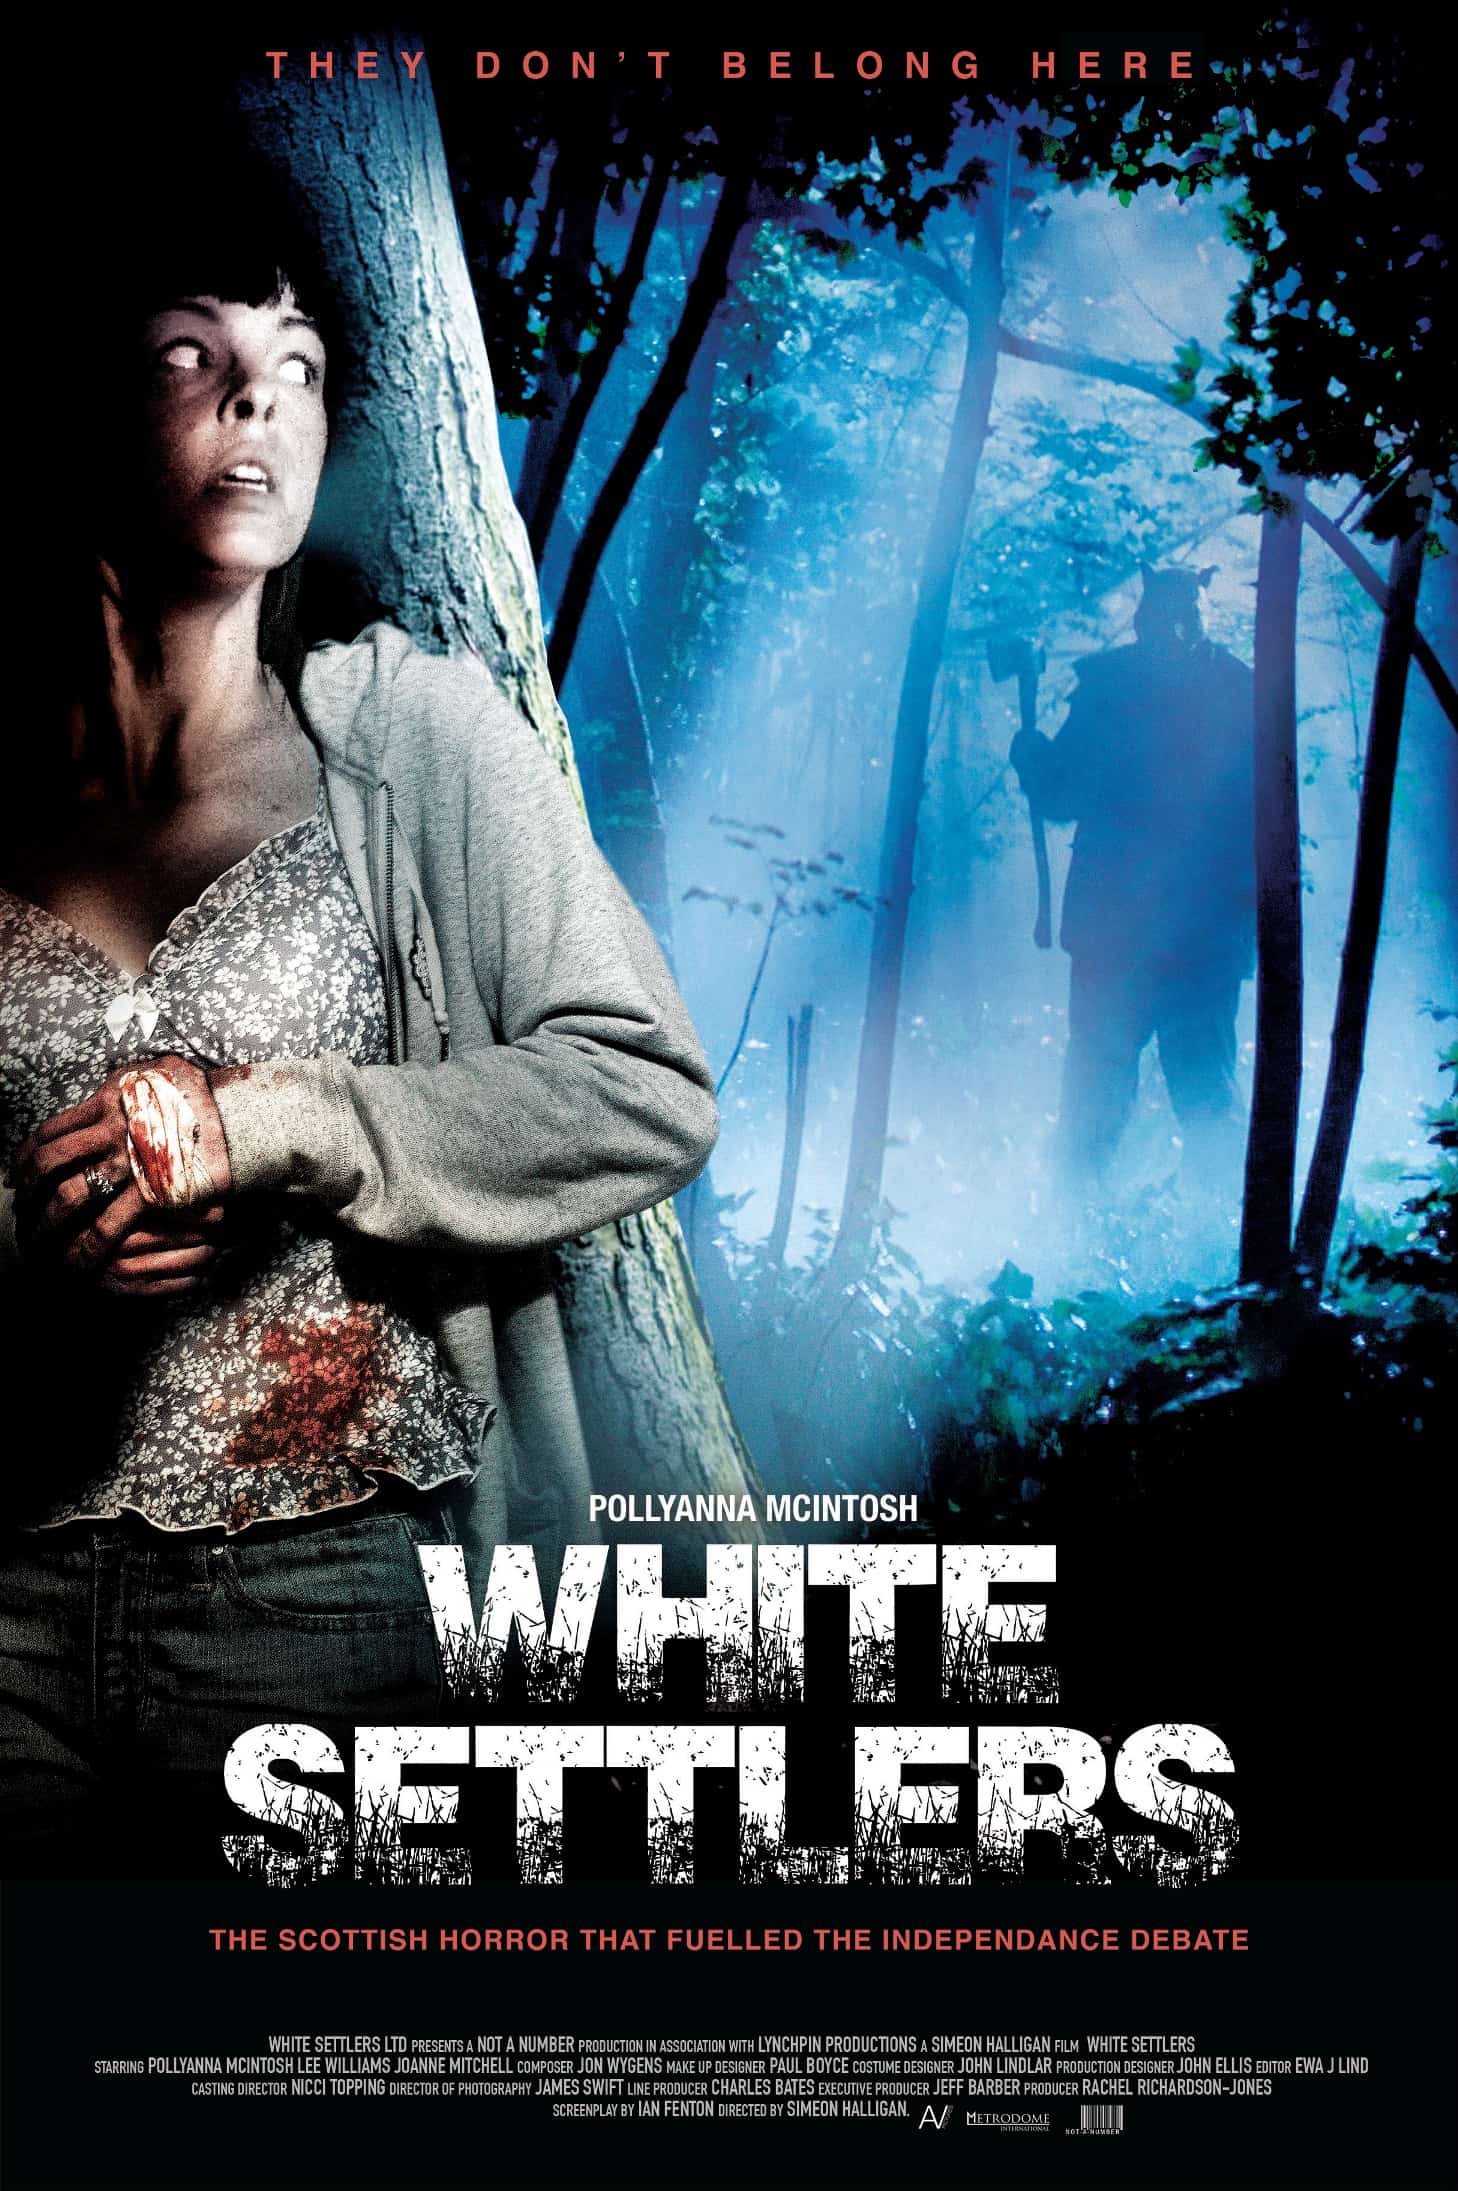 WHITE SETTLERS